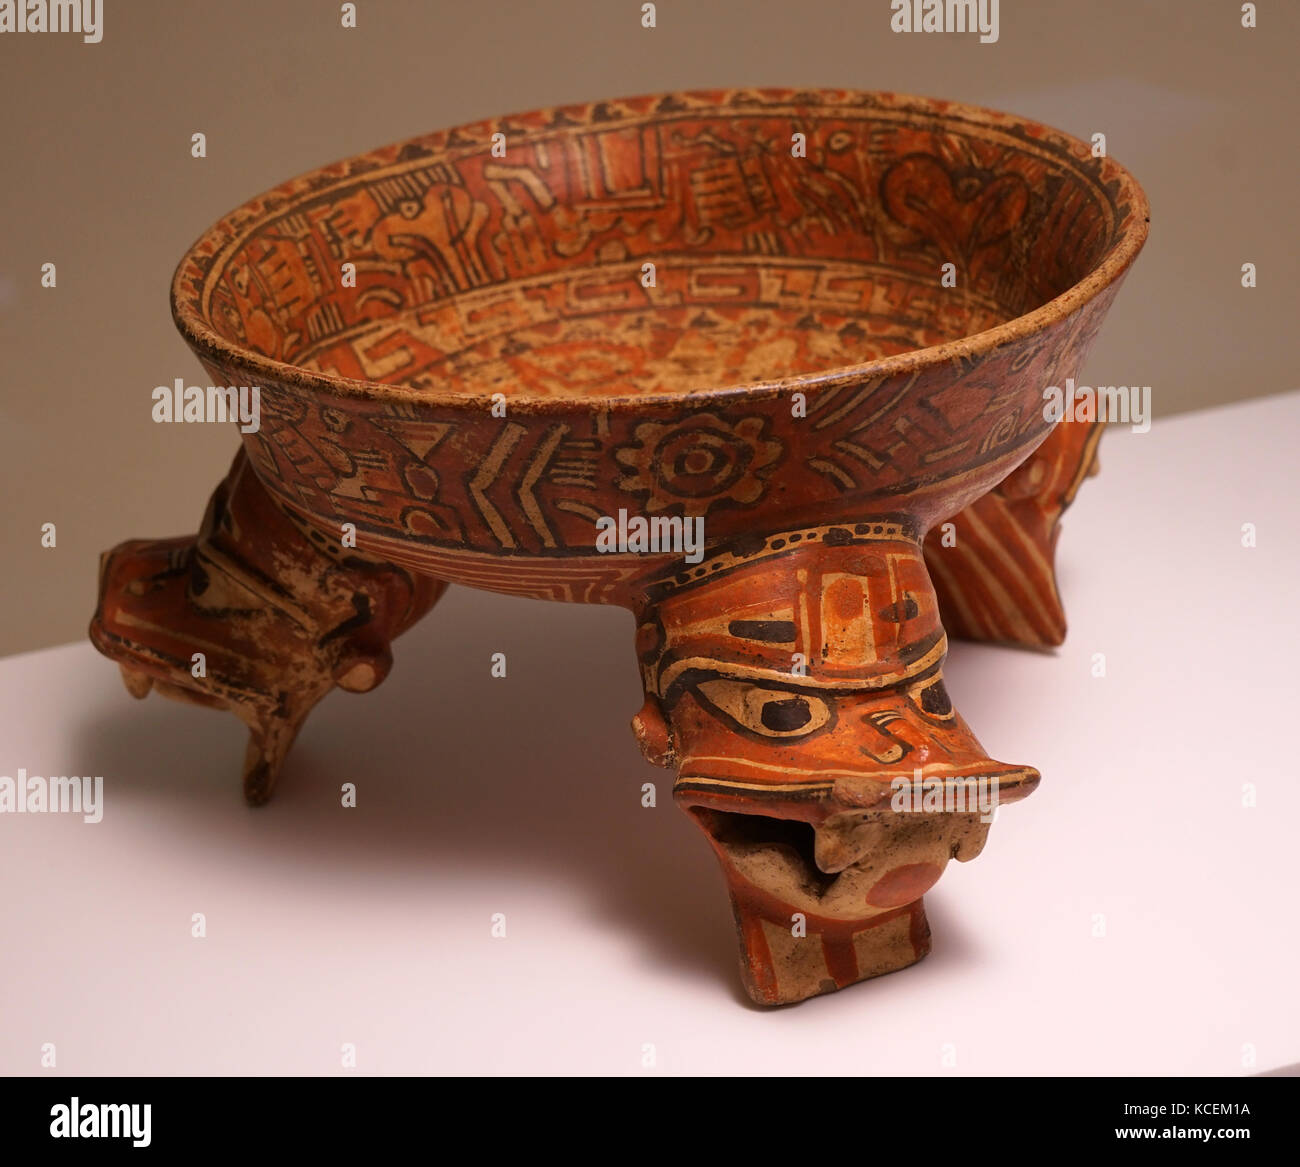 Vaso para trípode de cerámica con representaciones de felinos, desde Nicaragua. Fecha del siglo XIV. Foto de stock